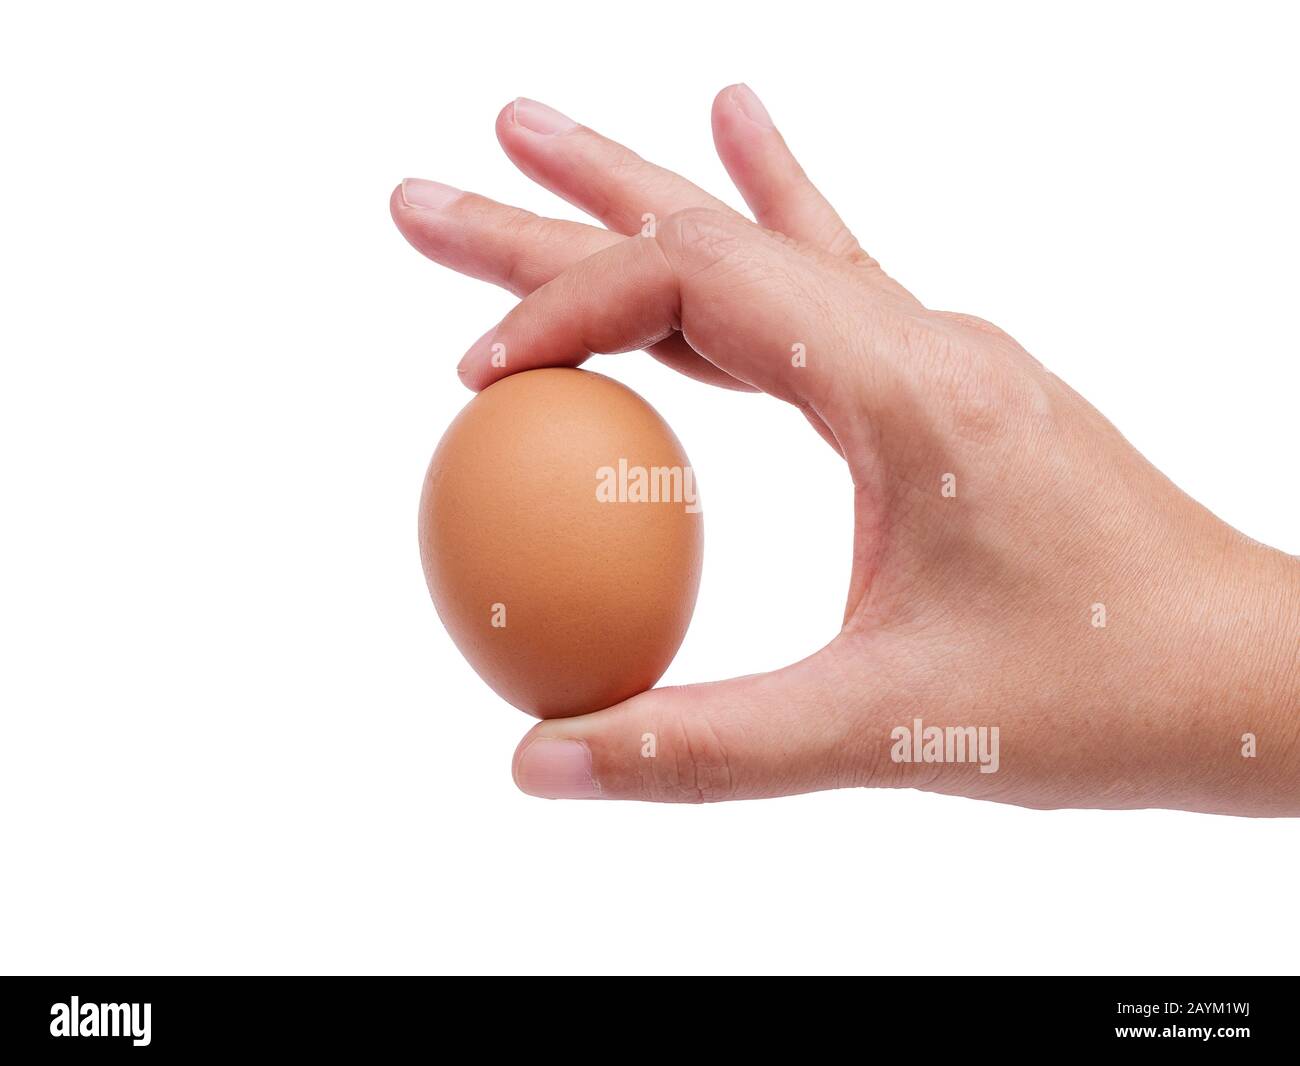 donna mano che tiene singolo uovo di pollo marrone isolato su sfondo bianco con sentiero di ritaglio Foto Stock